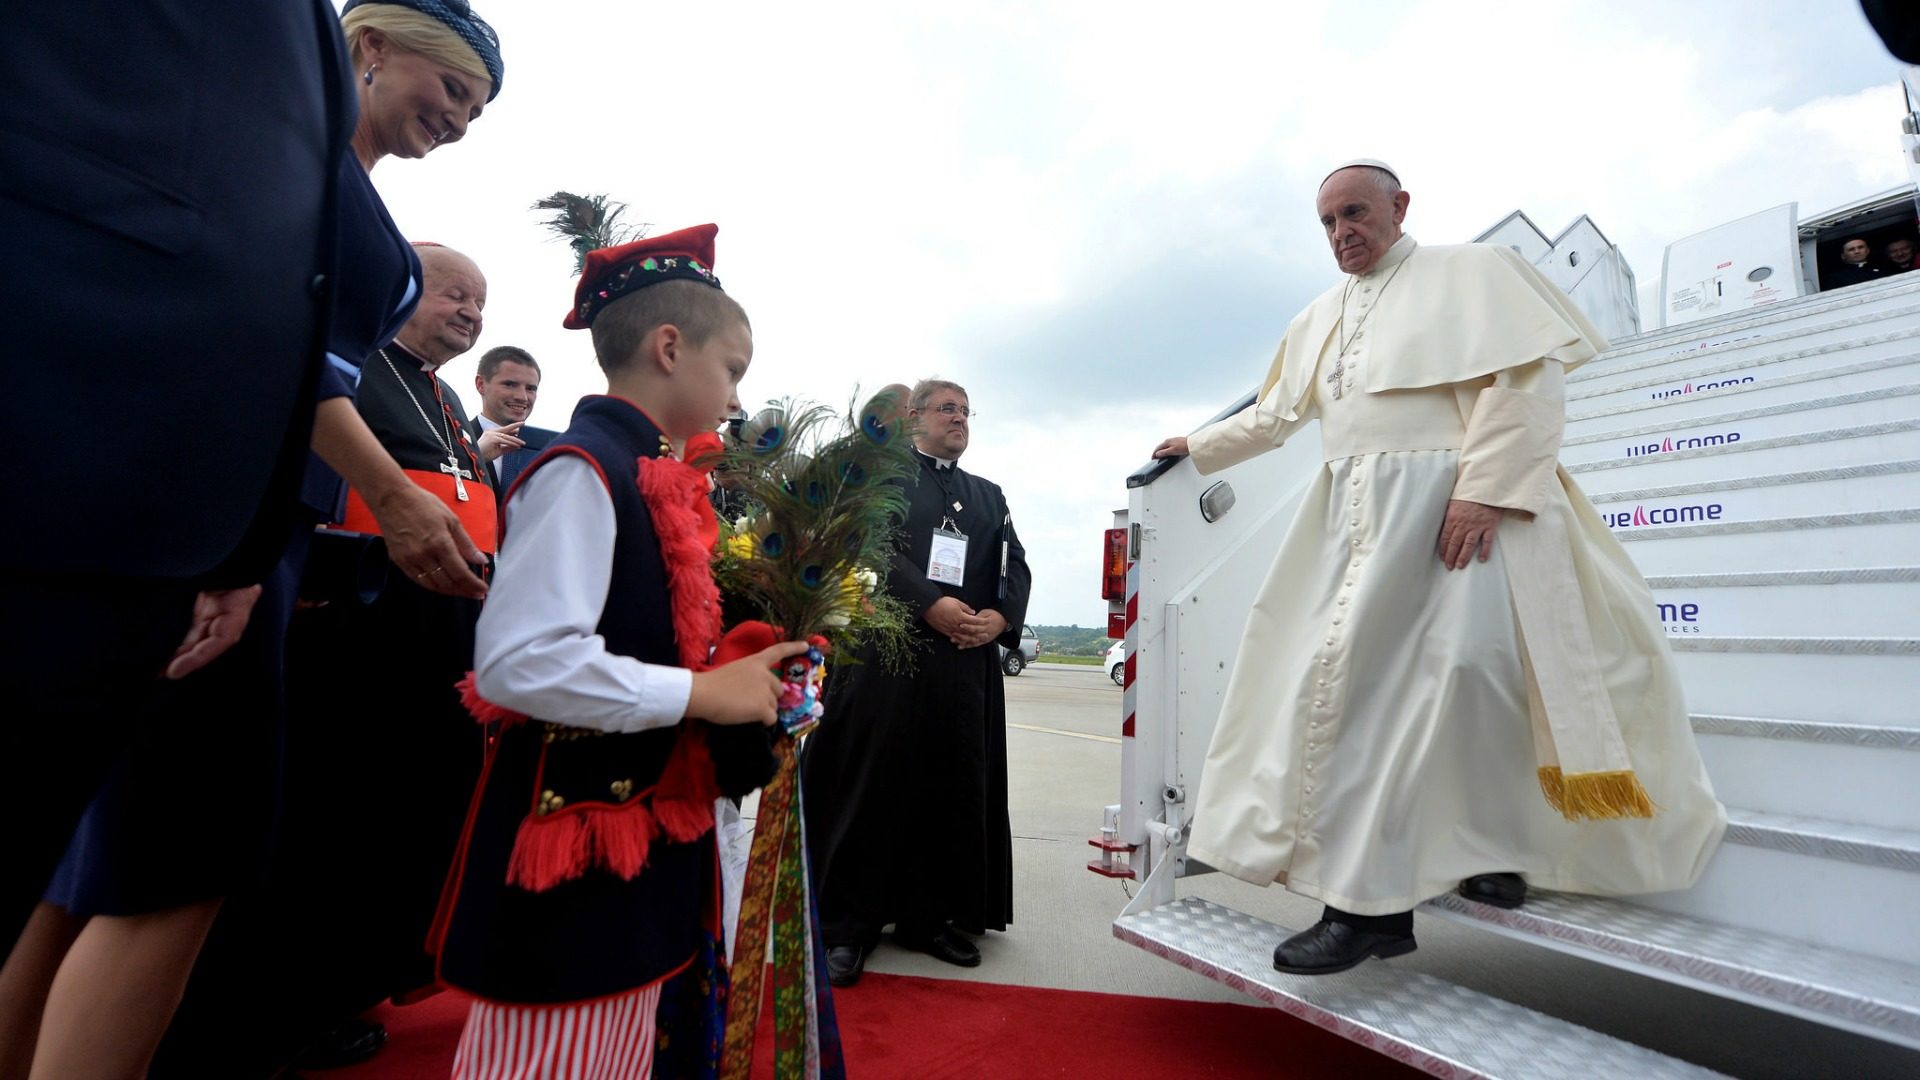 Le pape François à sa descente d'avion, lors de son voyage en Pologne, à l'occasion des JMJ. (Photo: Flickr/Mazur/catholicnews.org.uk
/CC BY-NC-SA 2.0)